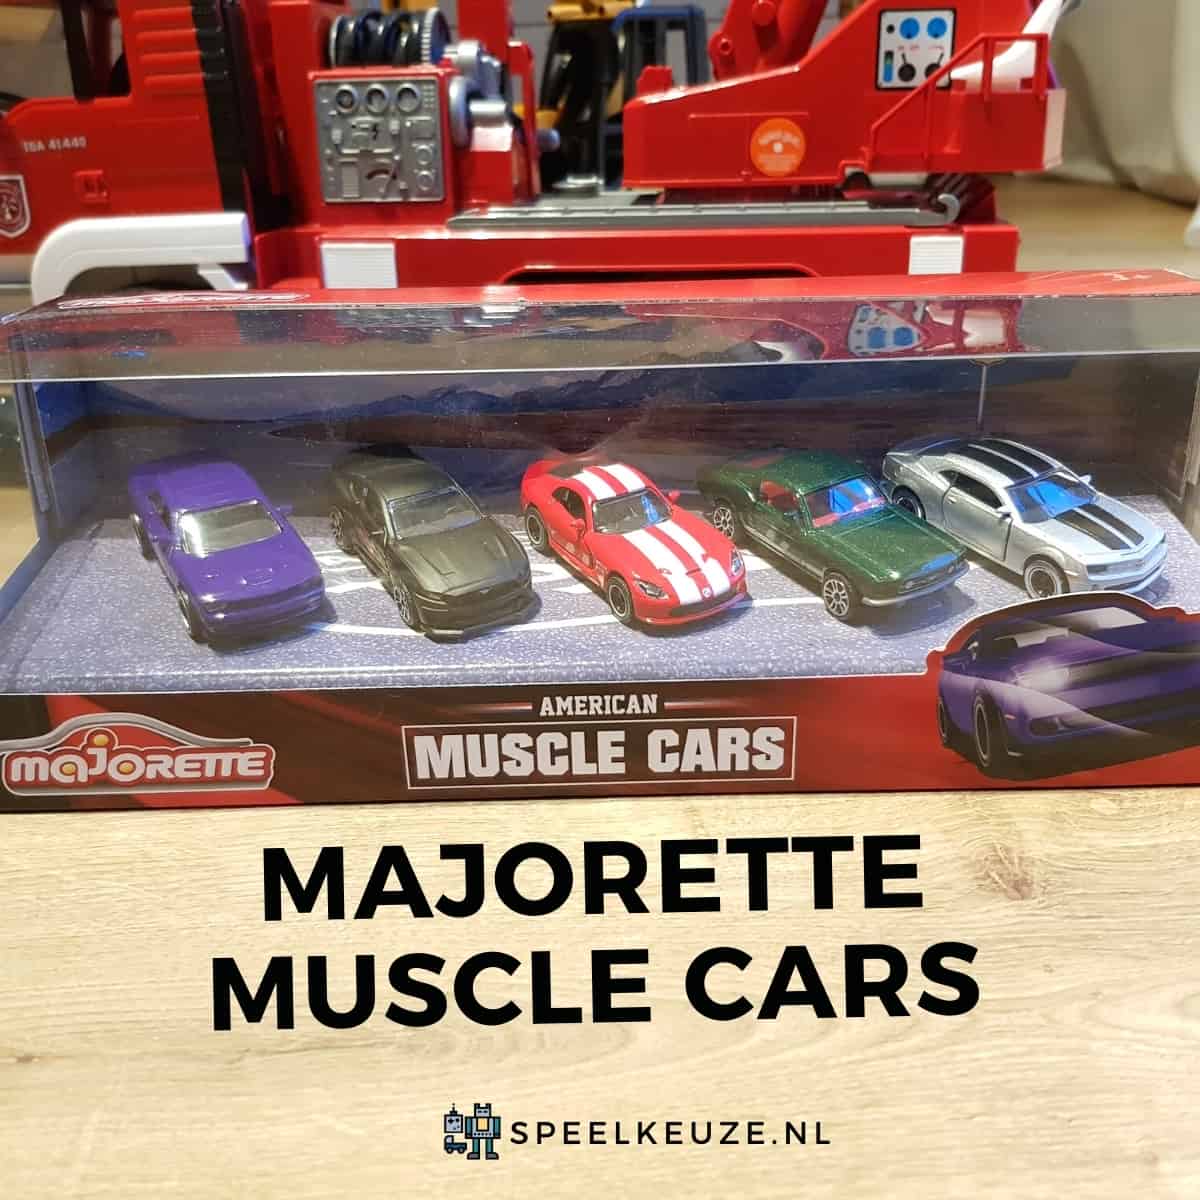 Majorette muscle cars